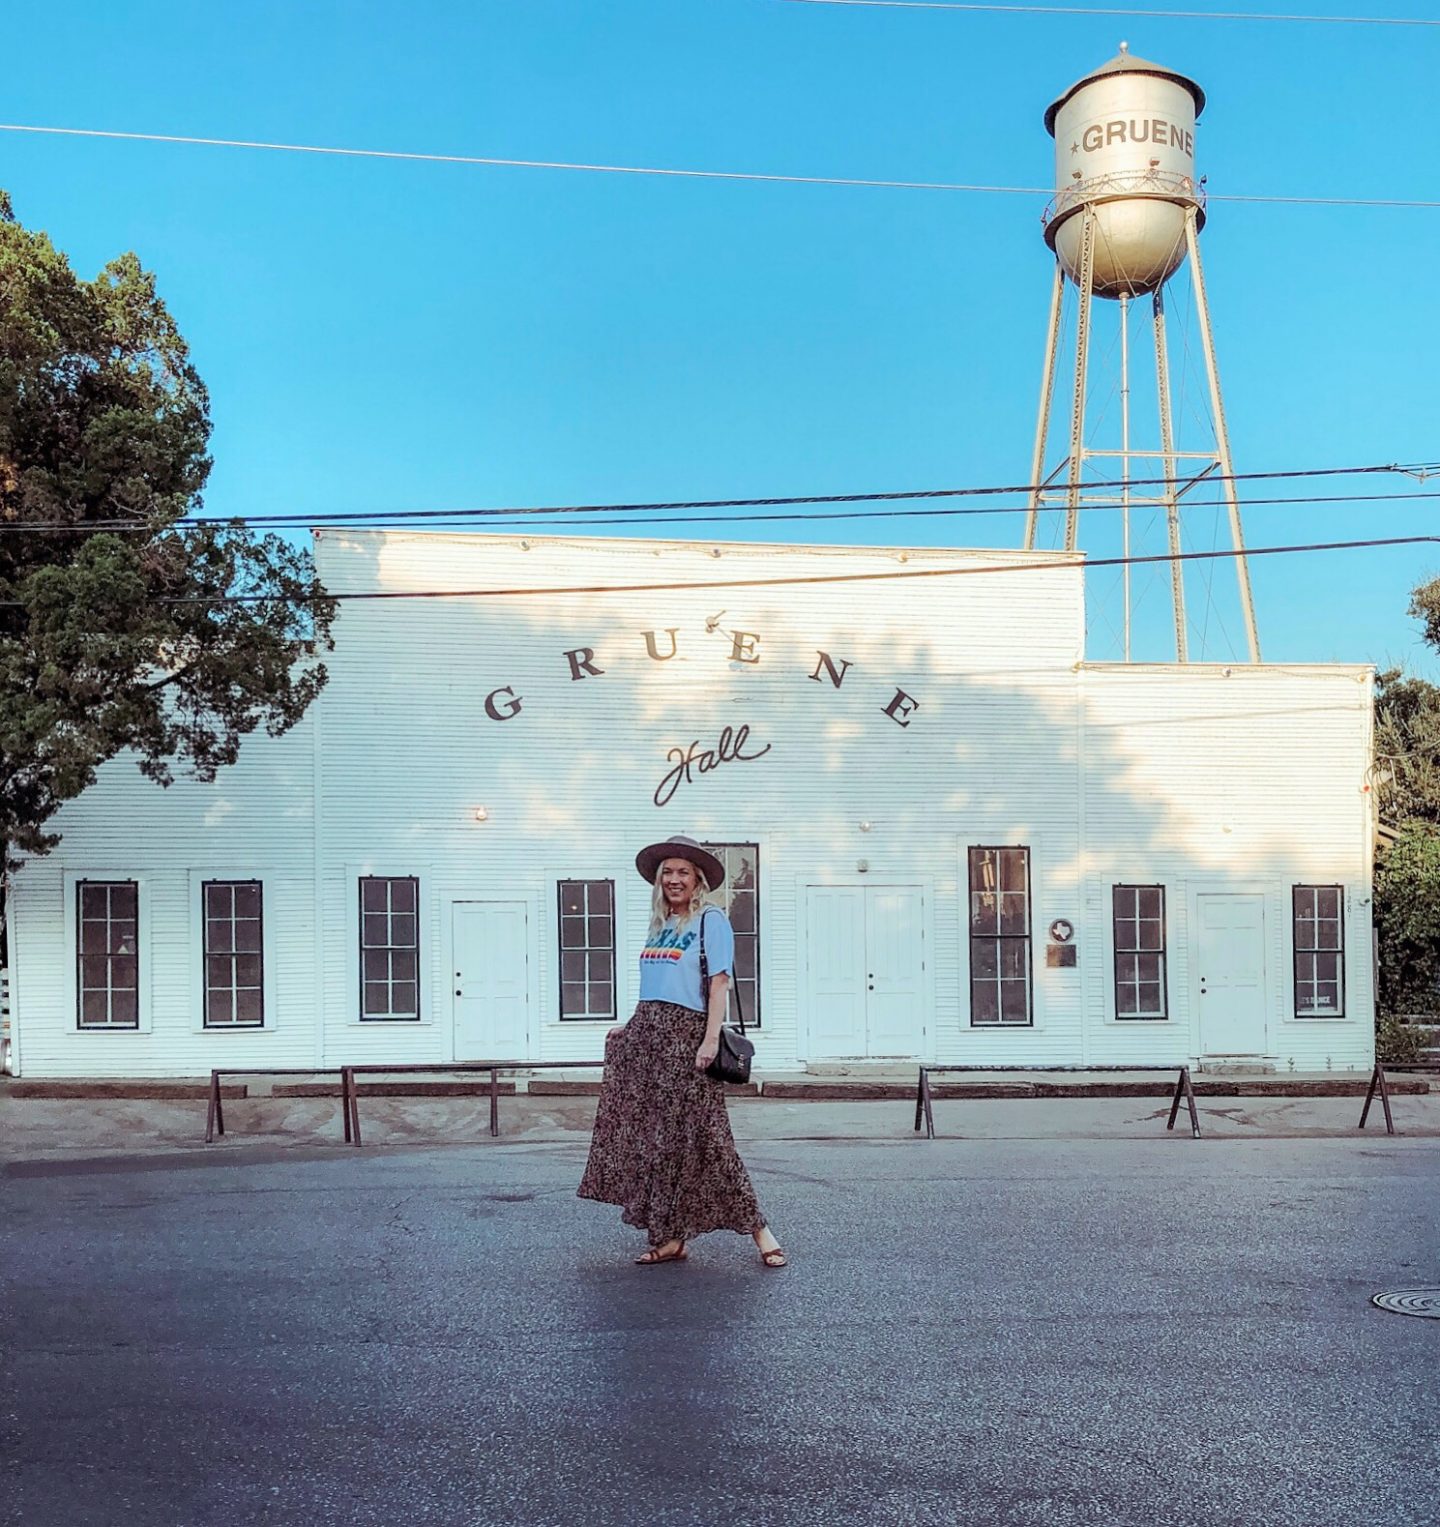 5 Most Instagrammable Spots in New Braunfels & Gruene, Texas